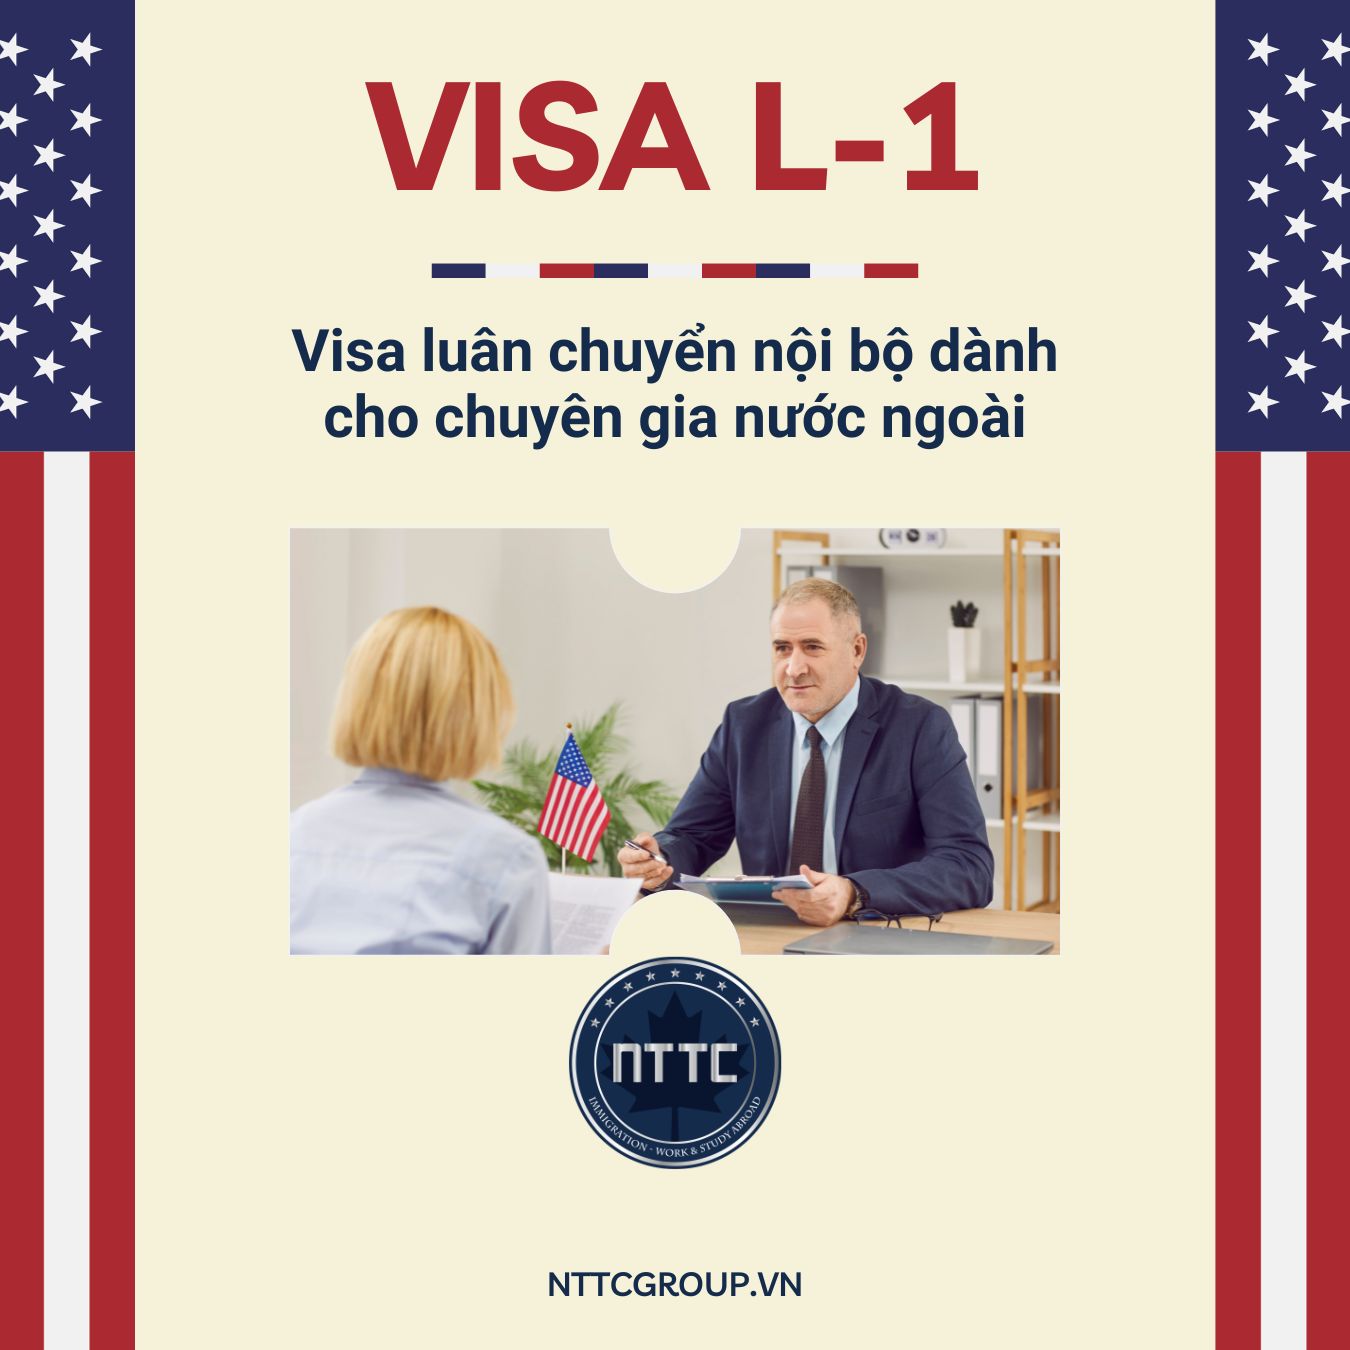 Visa L-1 Mỹ: Tìm hiểu chi tiết về Visa Luân chuyển nội bộ